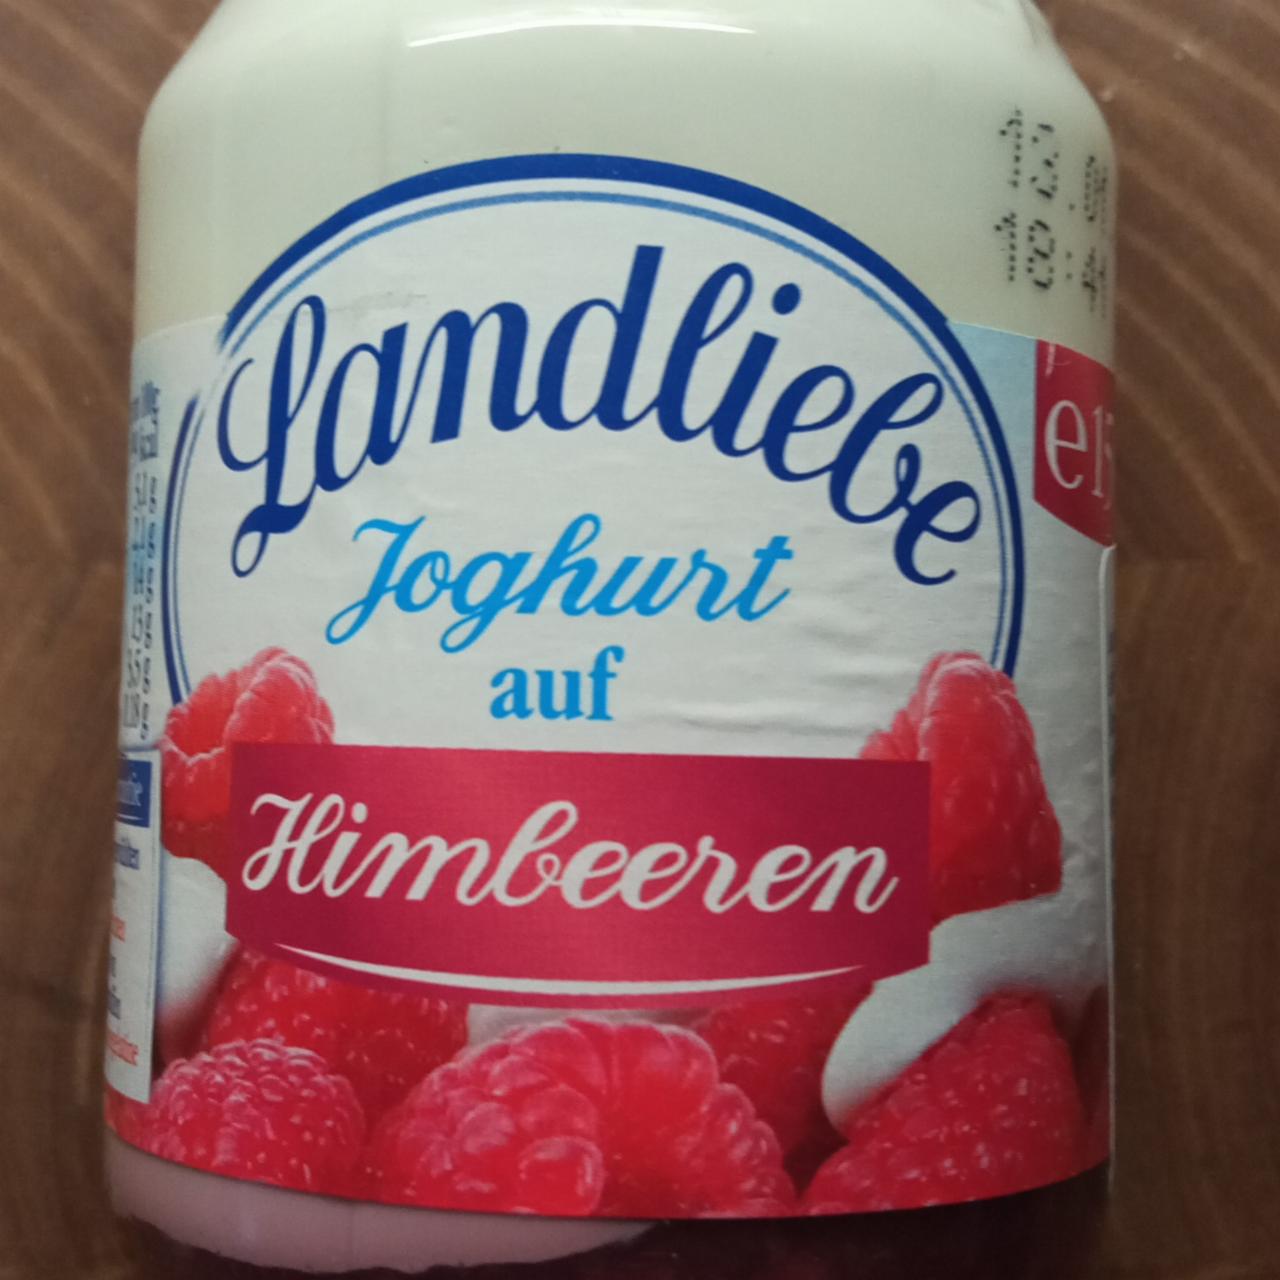 Fotografie - Joghurt auf Himbeeren Landliebe